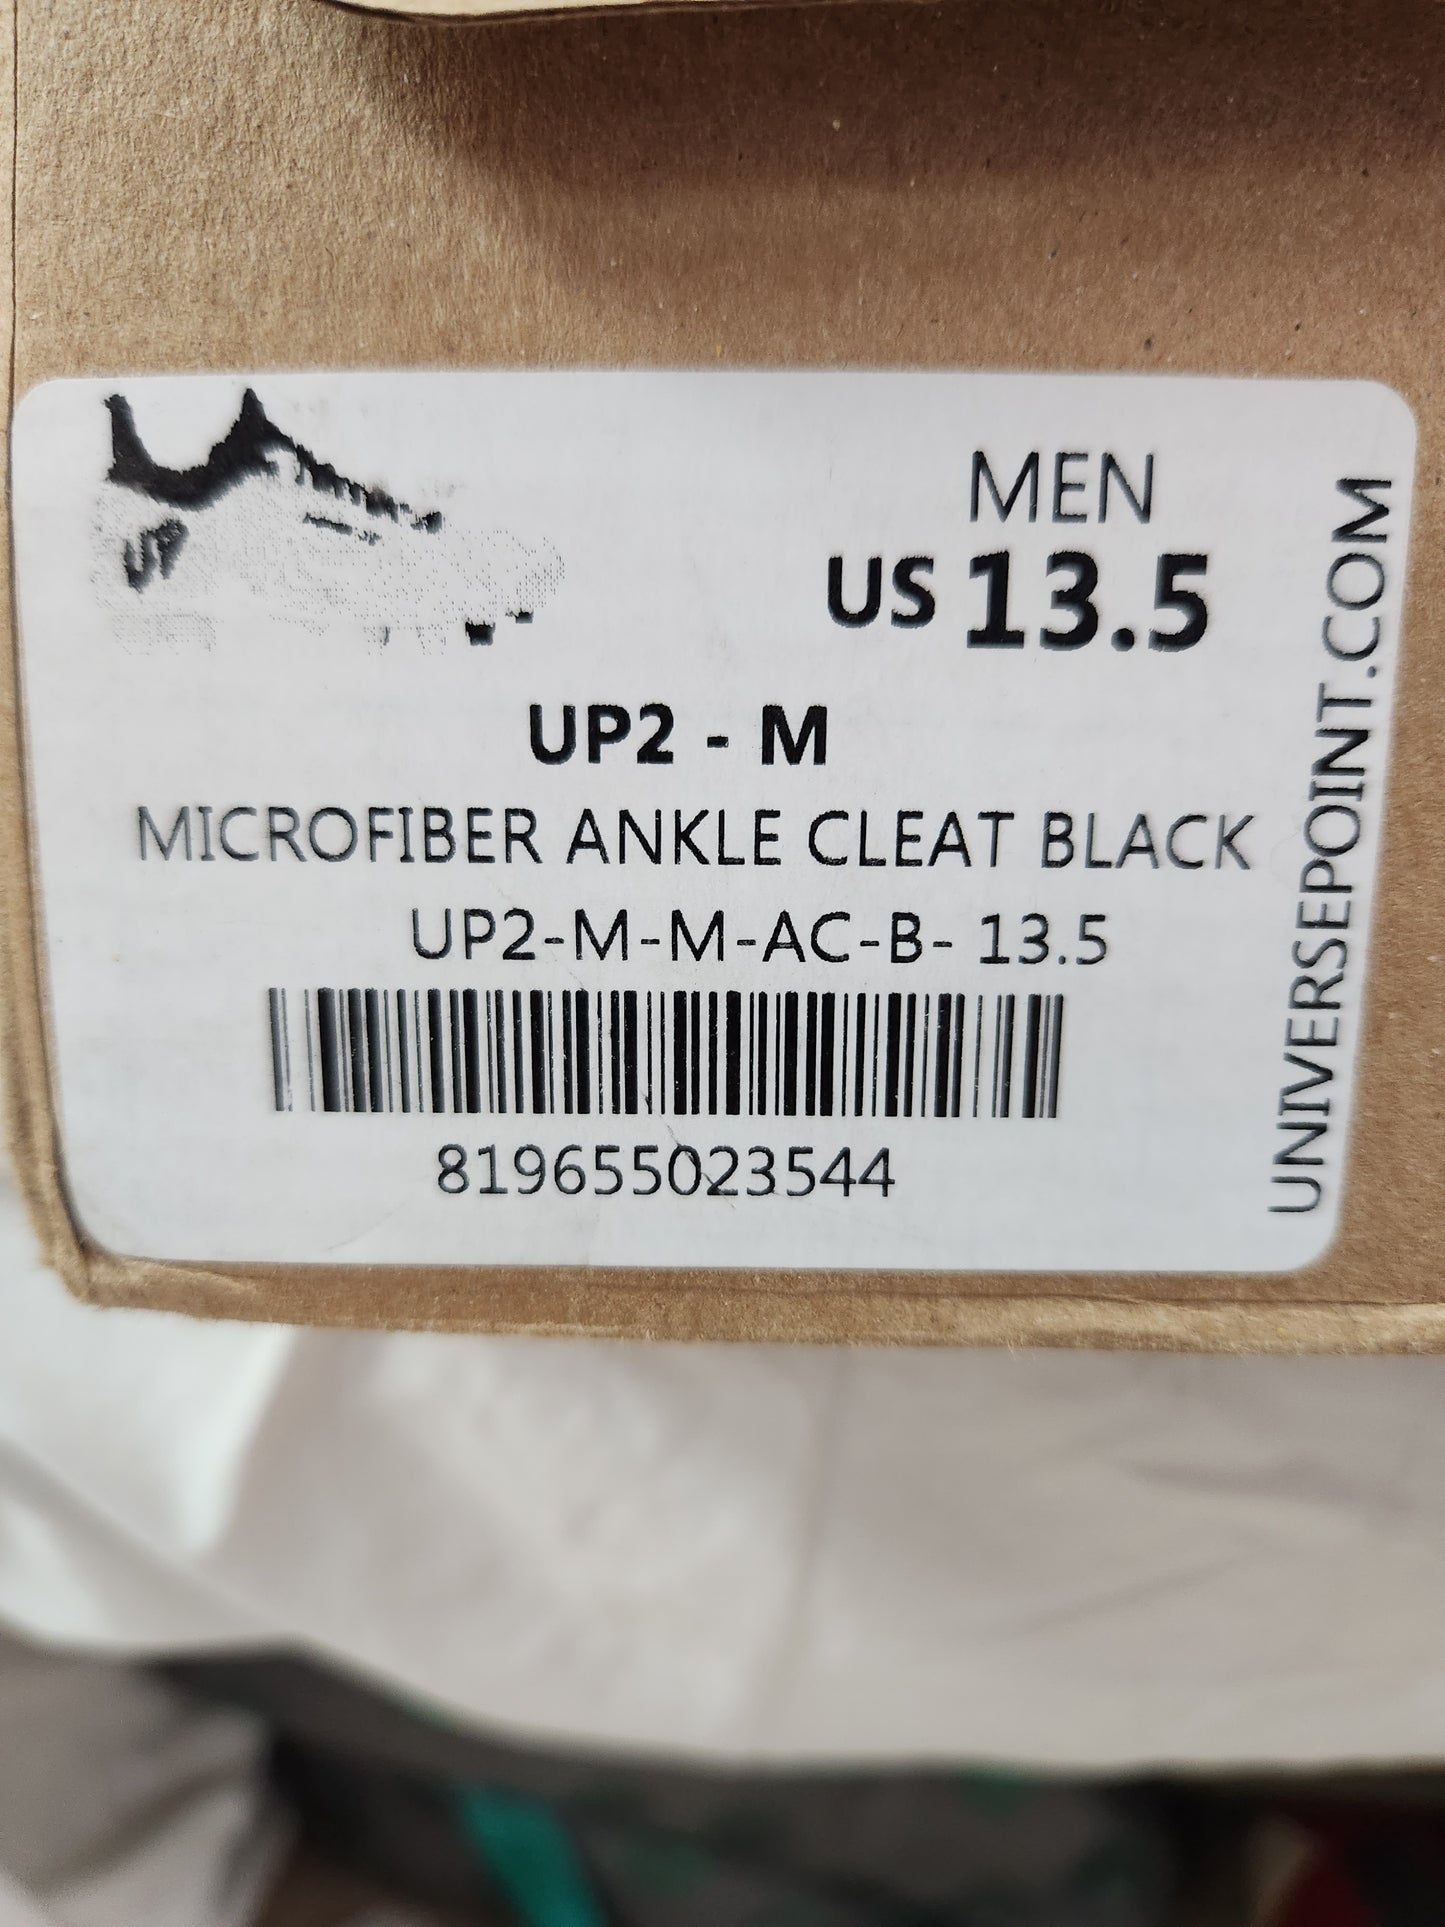 Rare Universe Point Men's Black Microfiber Ankle Cleats - Size: 13.5